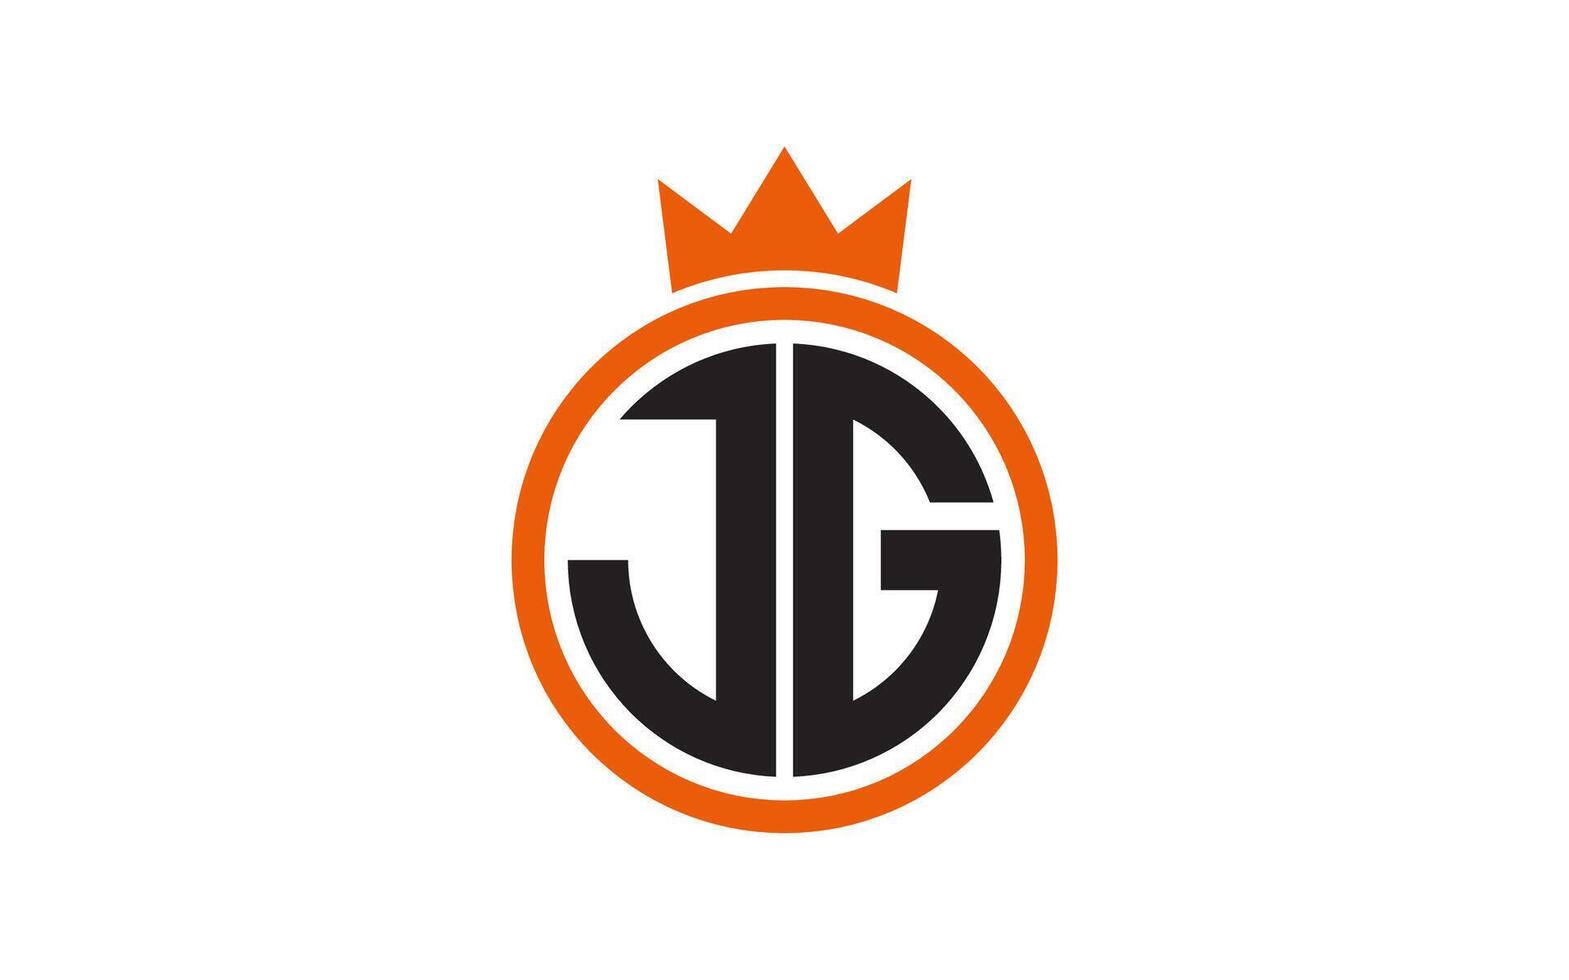 Badge letter JG for University  College  Graduate  Campus logo design inspiration vector